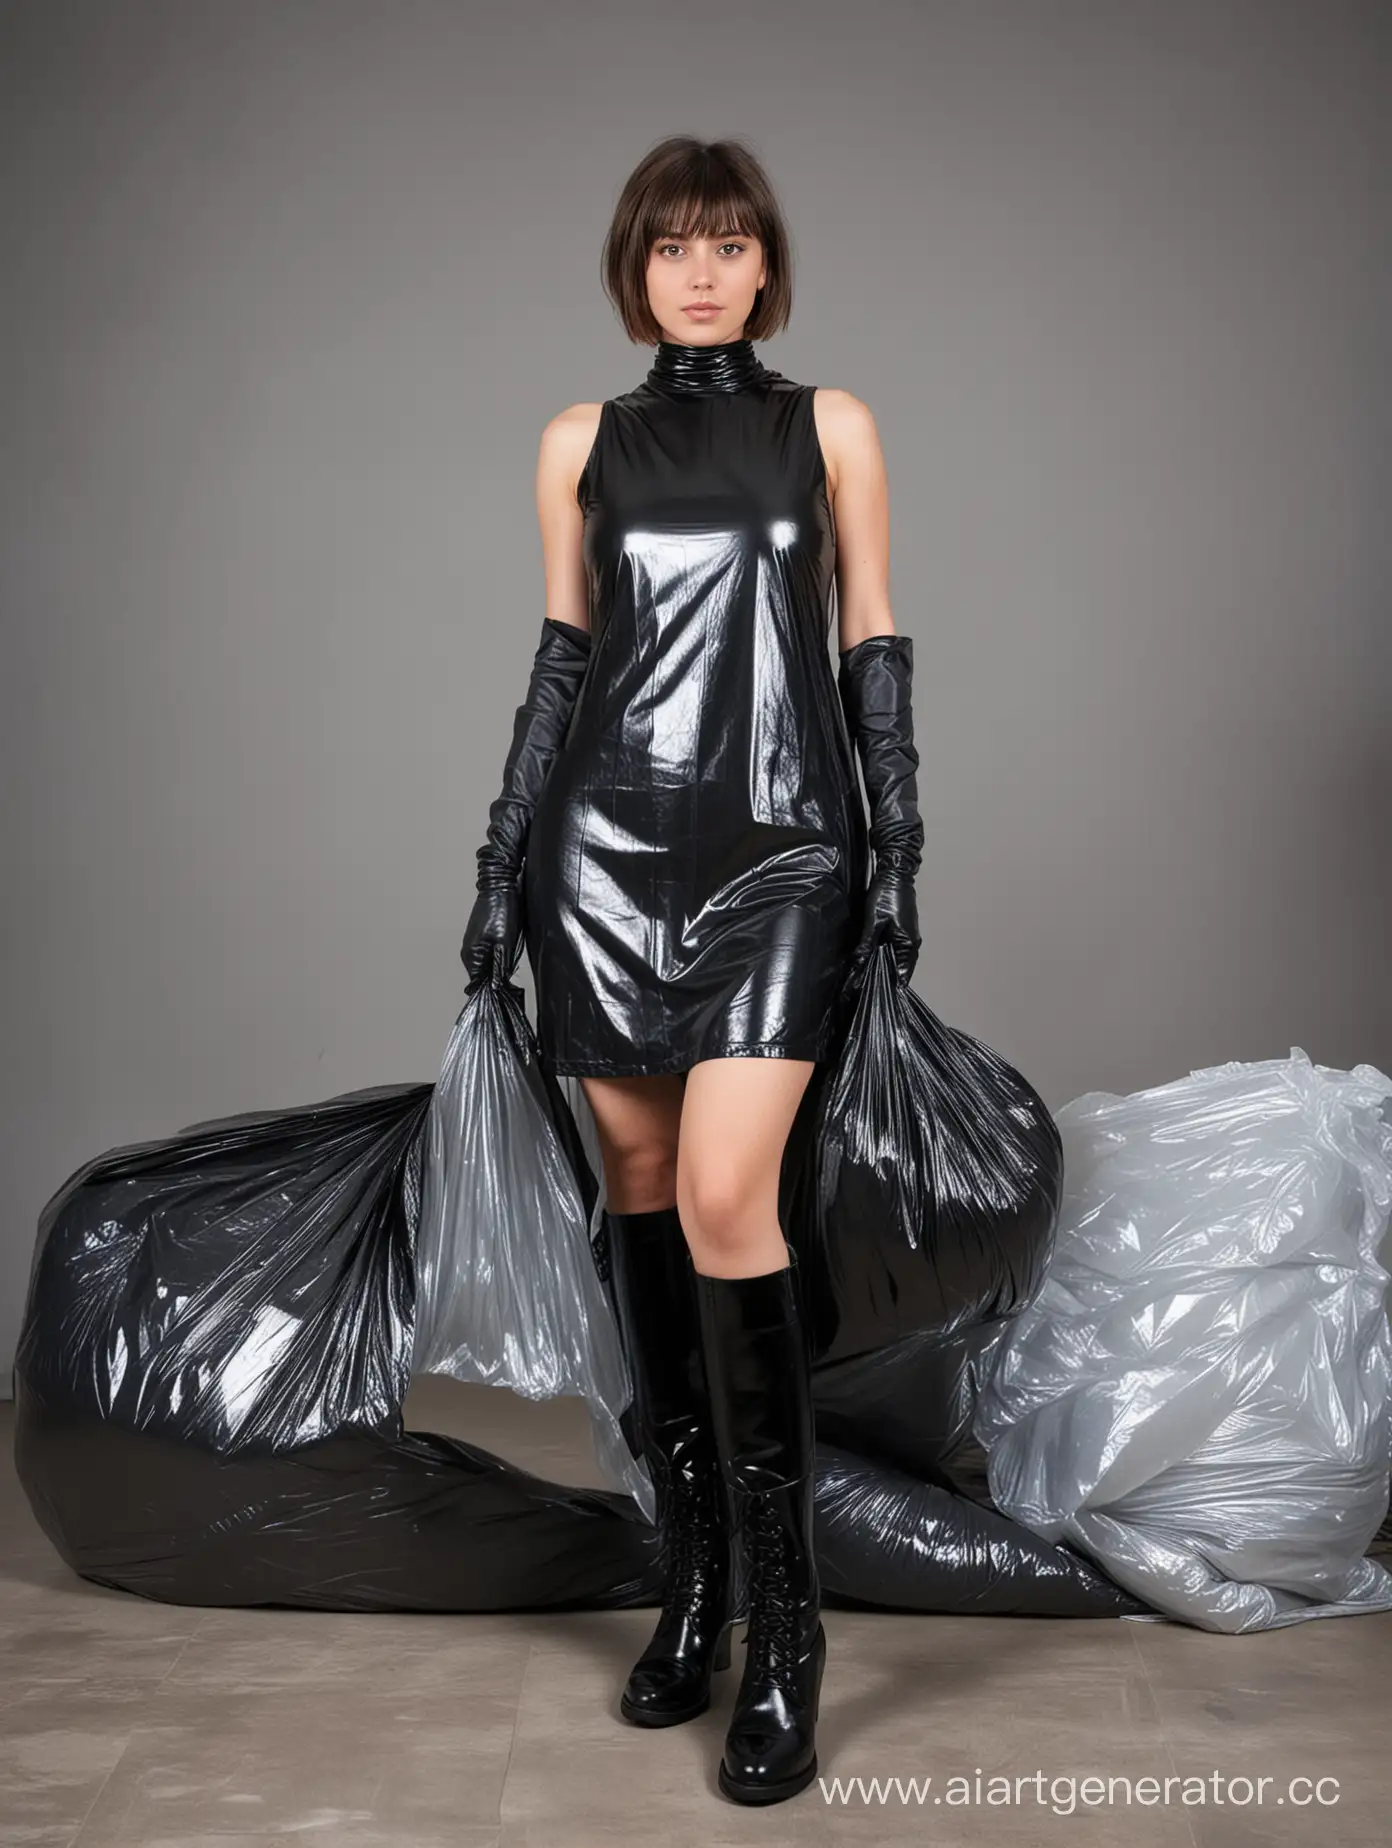 Девушка 18 лет, в руках черный мусорный пакет, короткая стрижка, длинное облегающее платье из серого мусорного пакета, черные глянцевые сапоги, перчатки, полиэтиленовая комната, валяются мусорные пакеты.